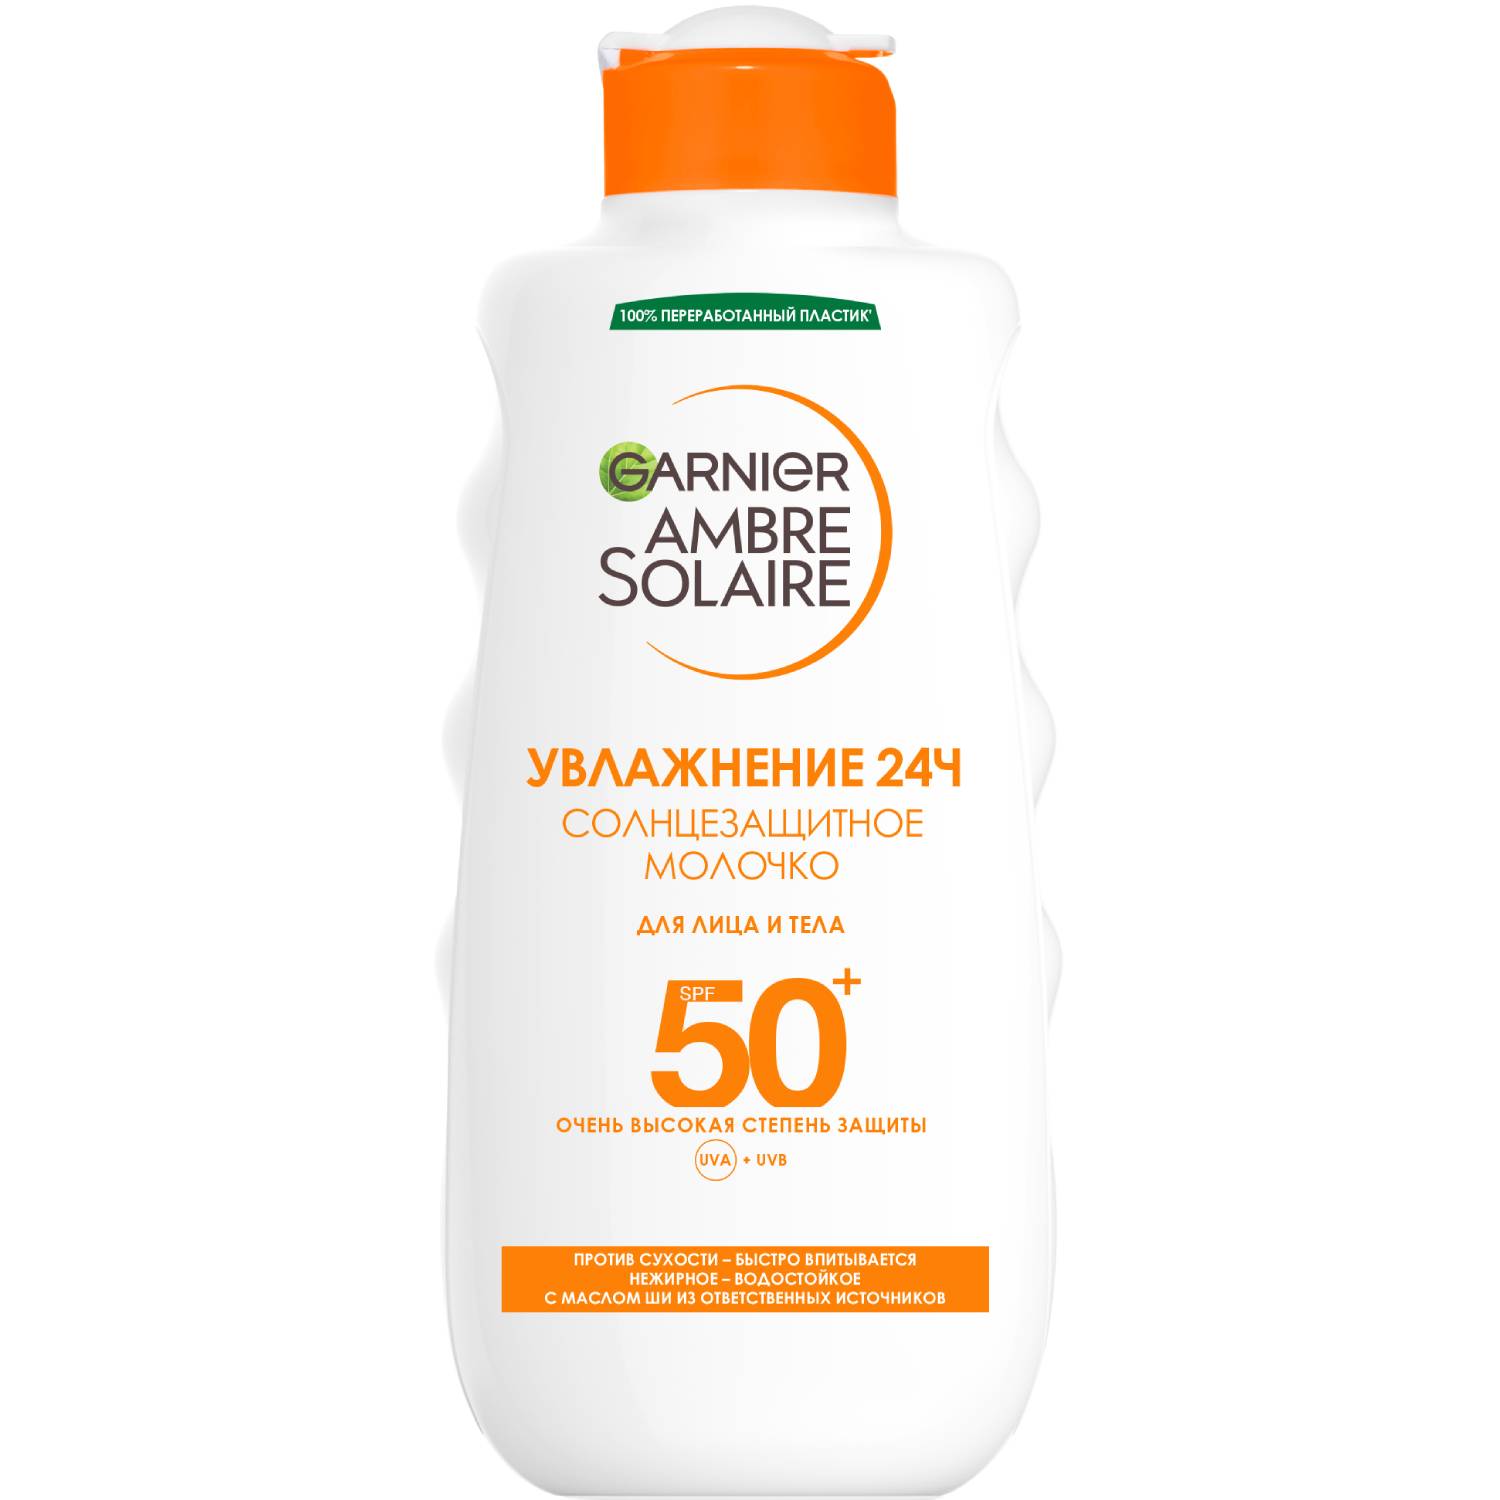 Garnier Солнцезащитное водостойкое молочко для лица и тела SPF50+, 200 мл (Garnier, Amber solaire) vanicream солнцезащитное средство для чувствительной кожи spf 50 85 г 3 унции